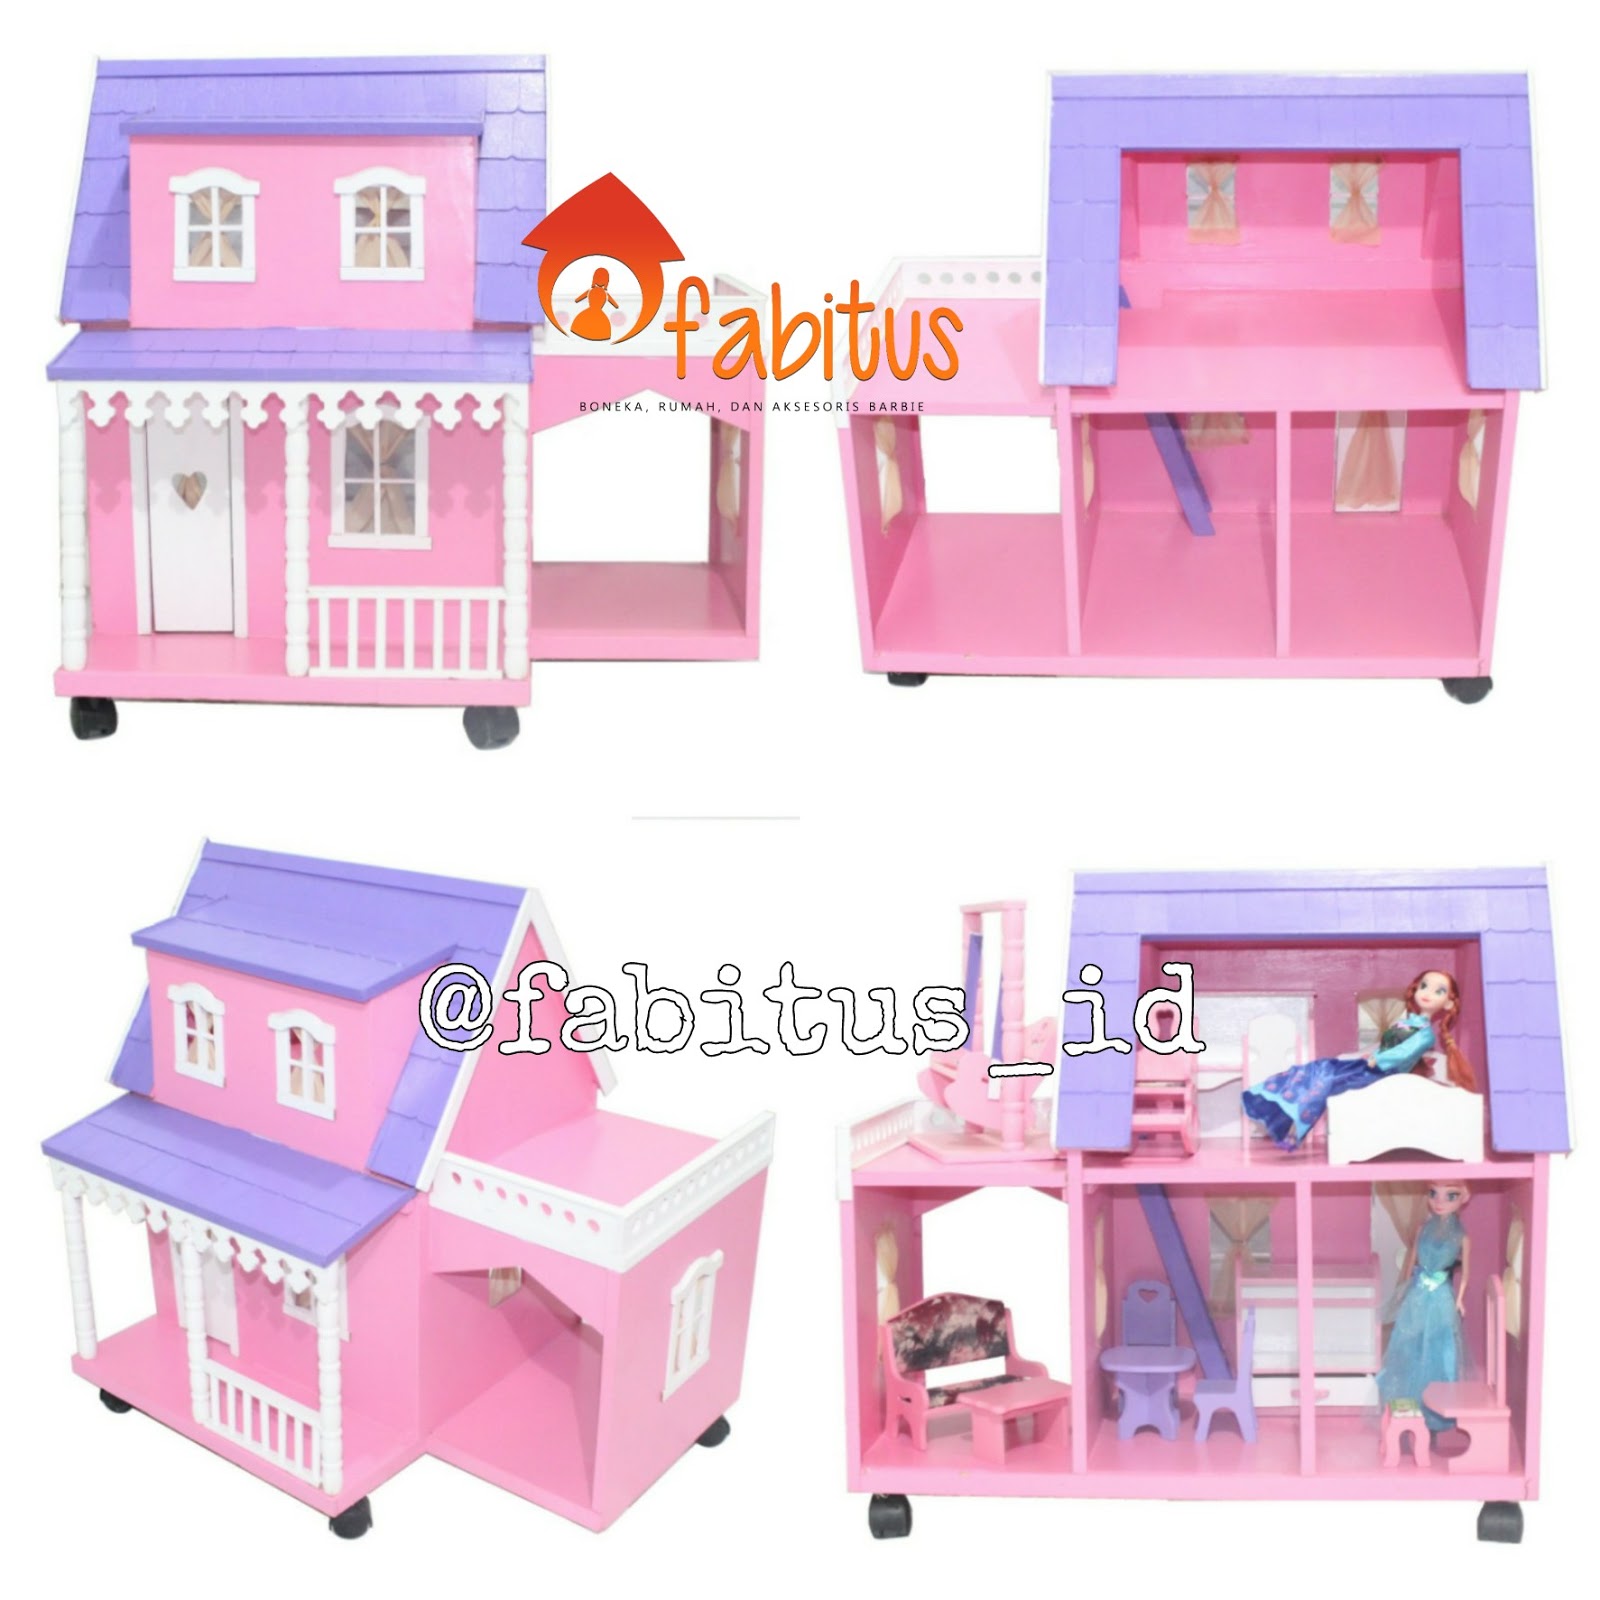 FABITUS rumah barbie